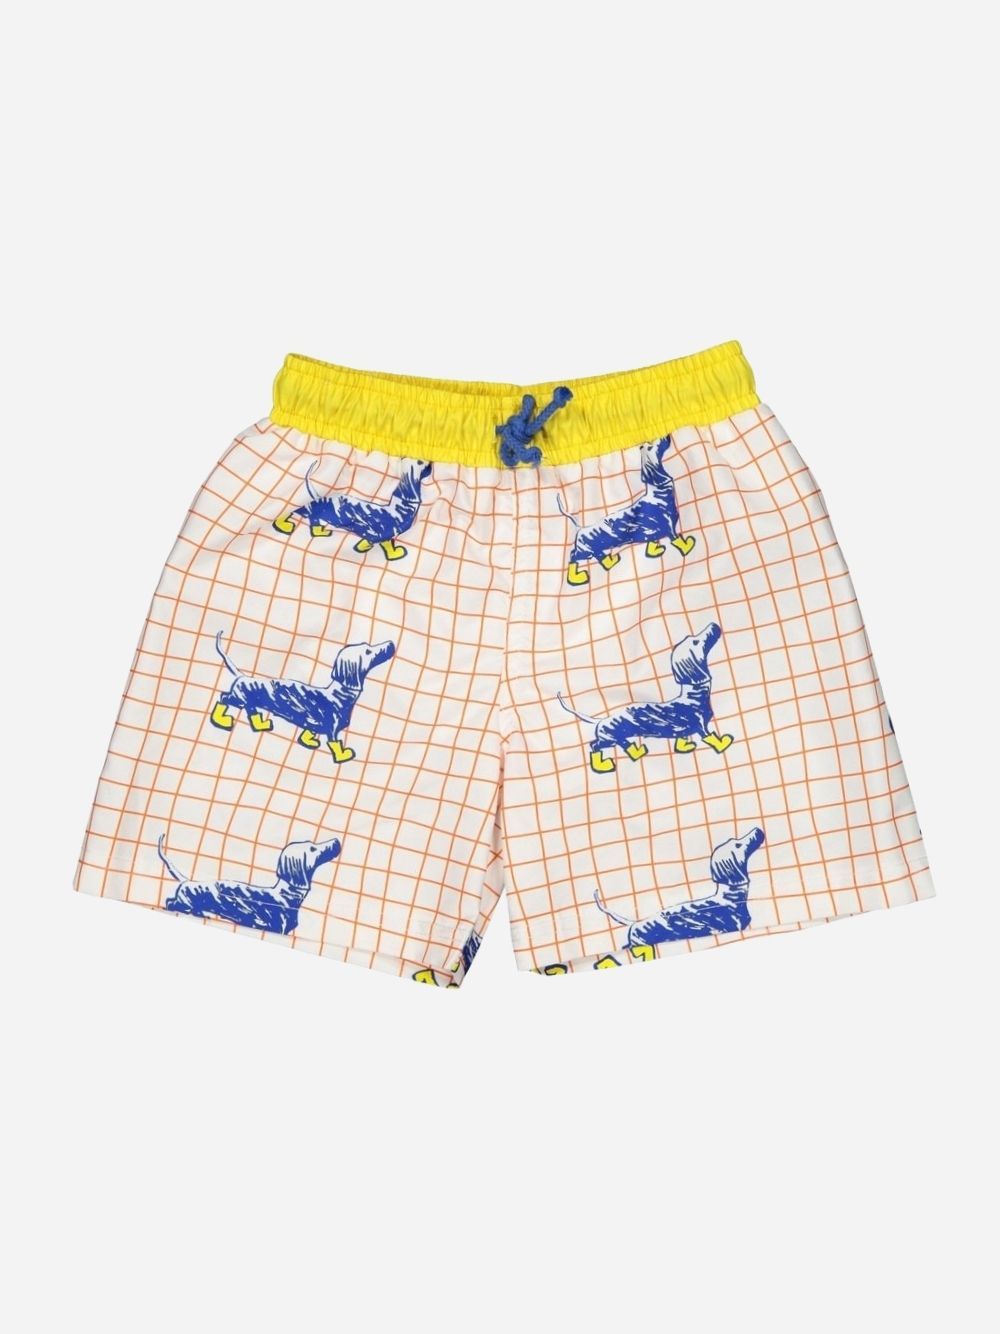 Puppies classic swim shorts